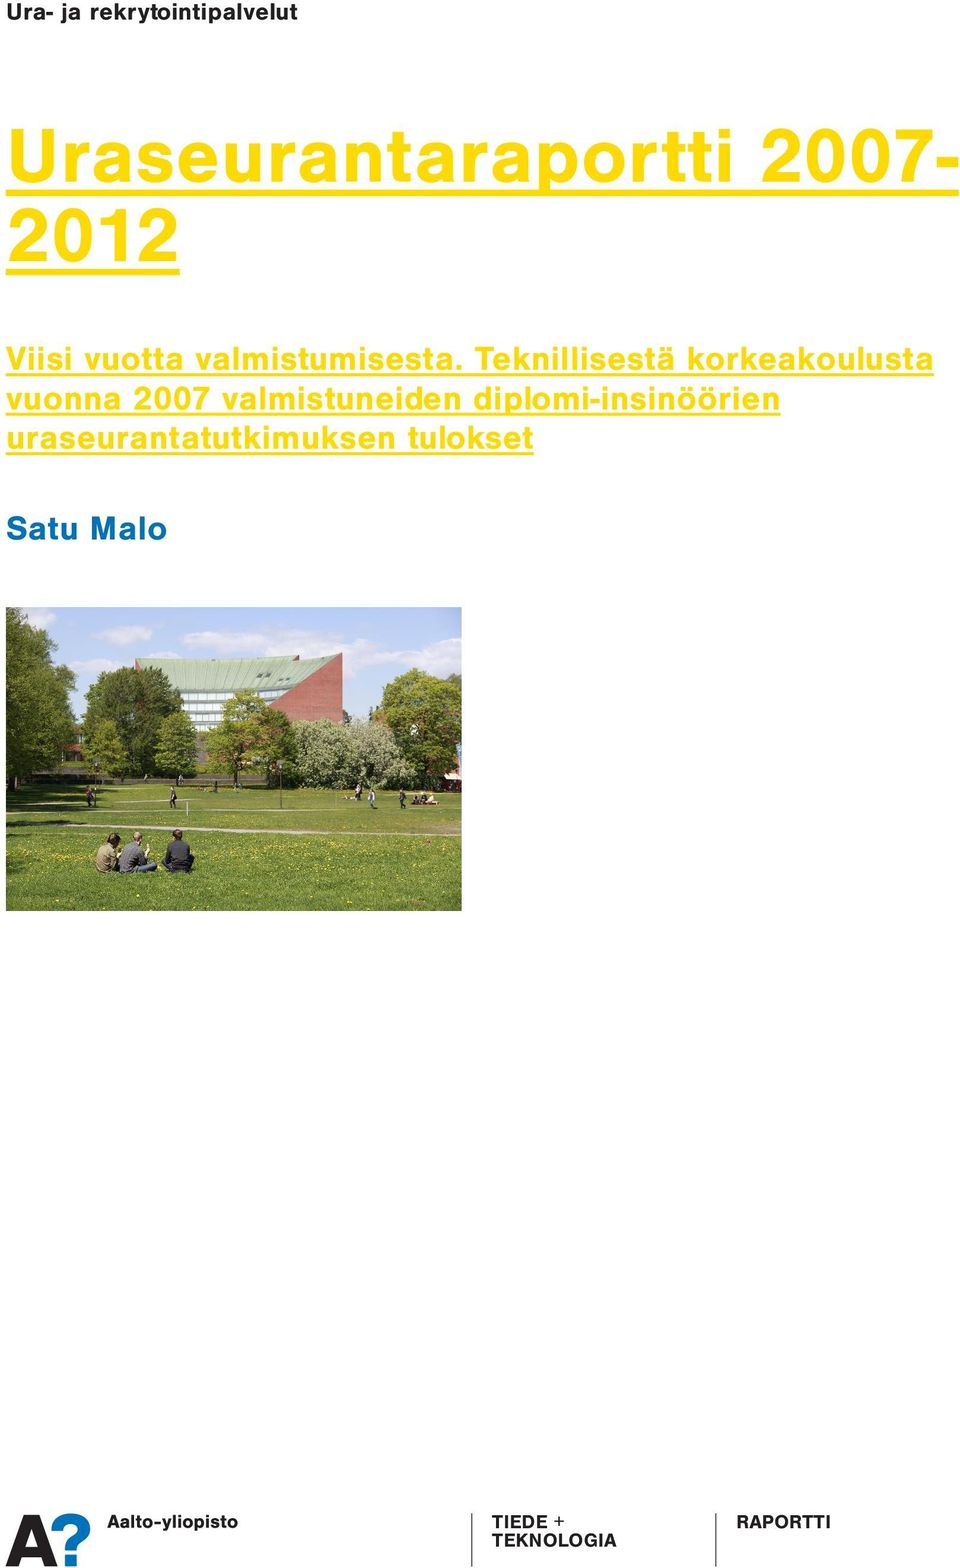 Uraseurantaraportti 2007-2012 Aalto-yliopiston tekniikan korkeakouluista valmistuneiden uraseurantaa on tehty vuodesta 2008 lähtien.